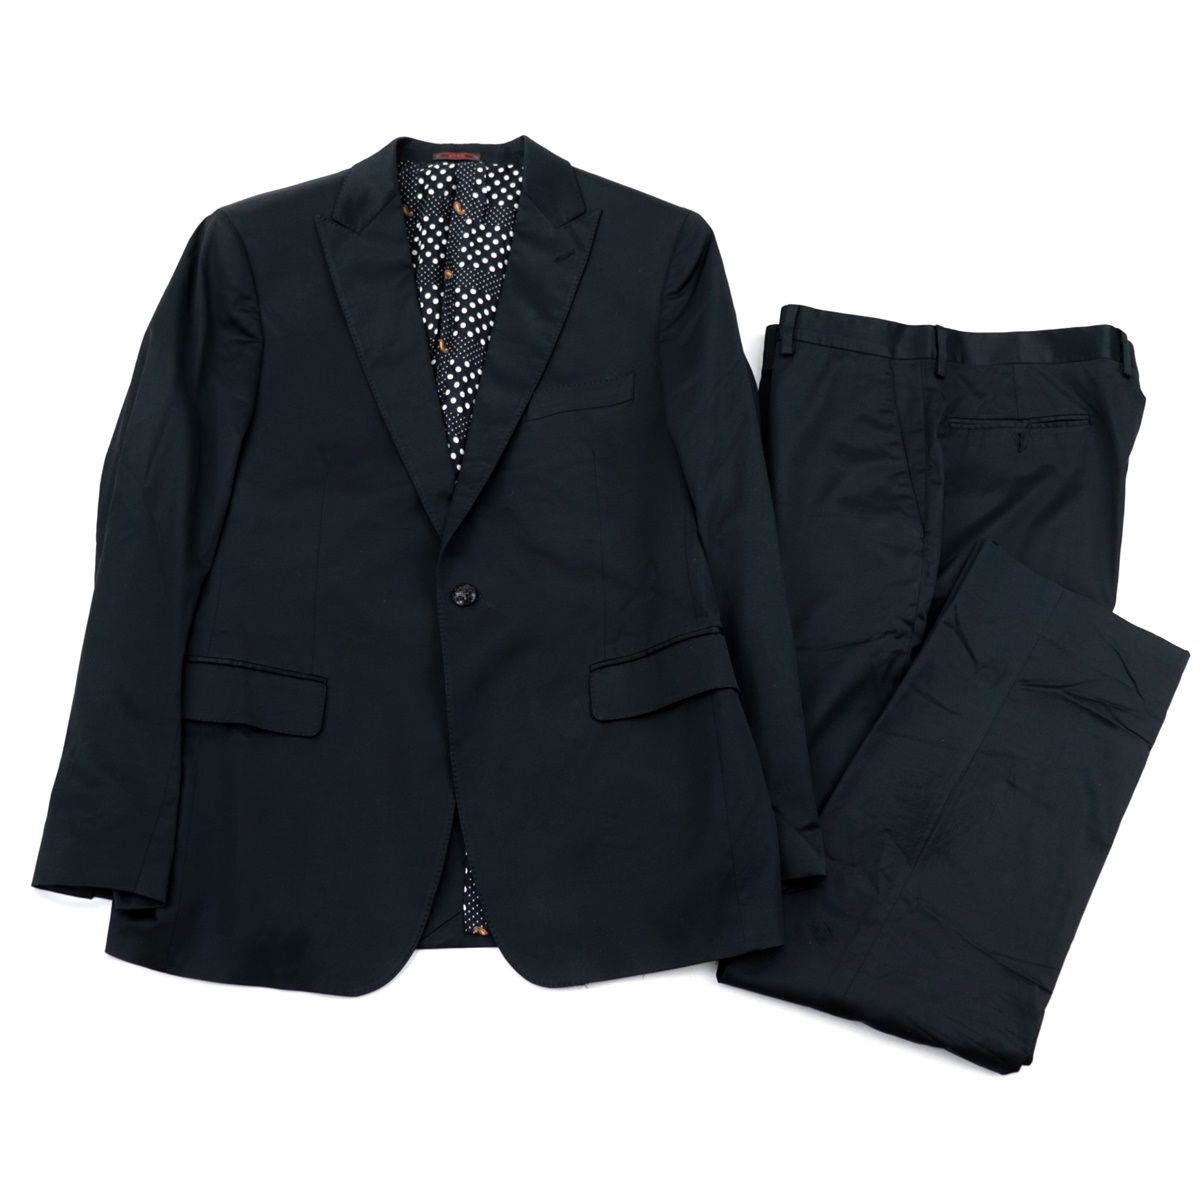 エトロ シングル スーツ メンズ 黒 56 裏地ドットペイズリー テーラードジャケット スラックスパンツ イタリア製 ETRO